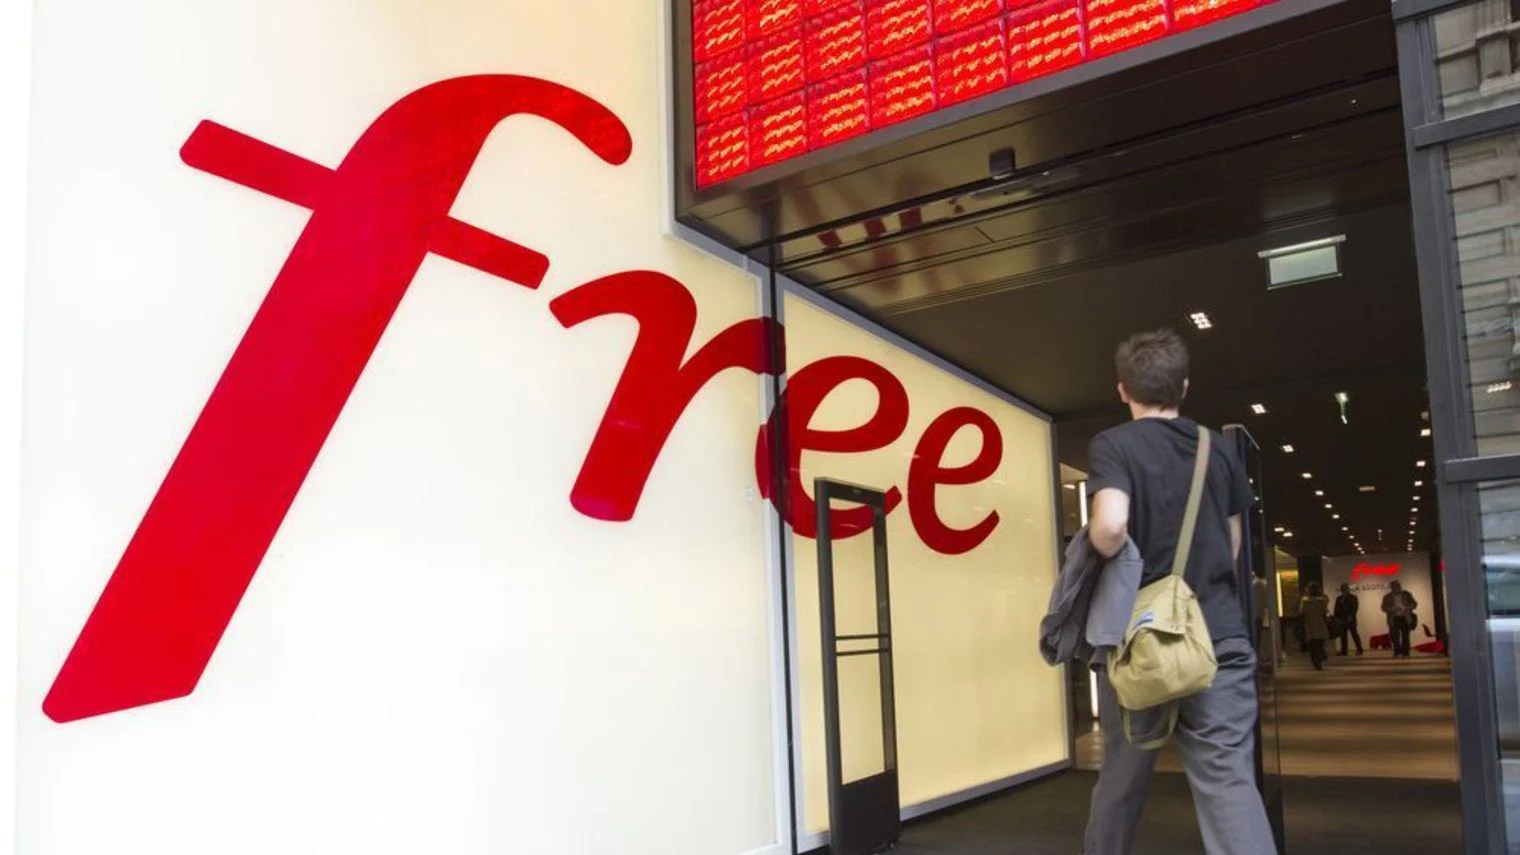 Free va bientôt en dire plus sur son réseau 5G et sa fibre FTTH